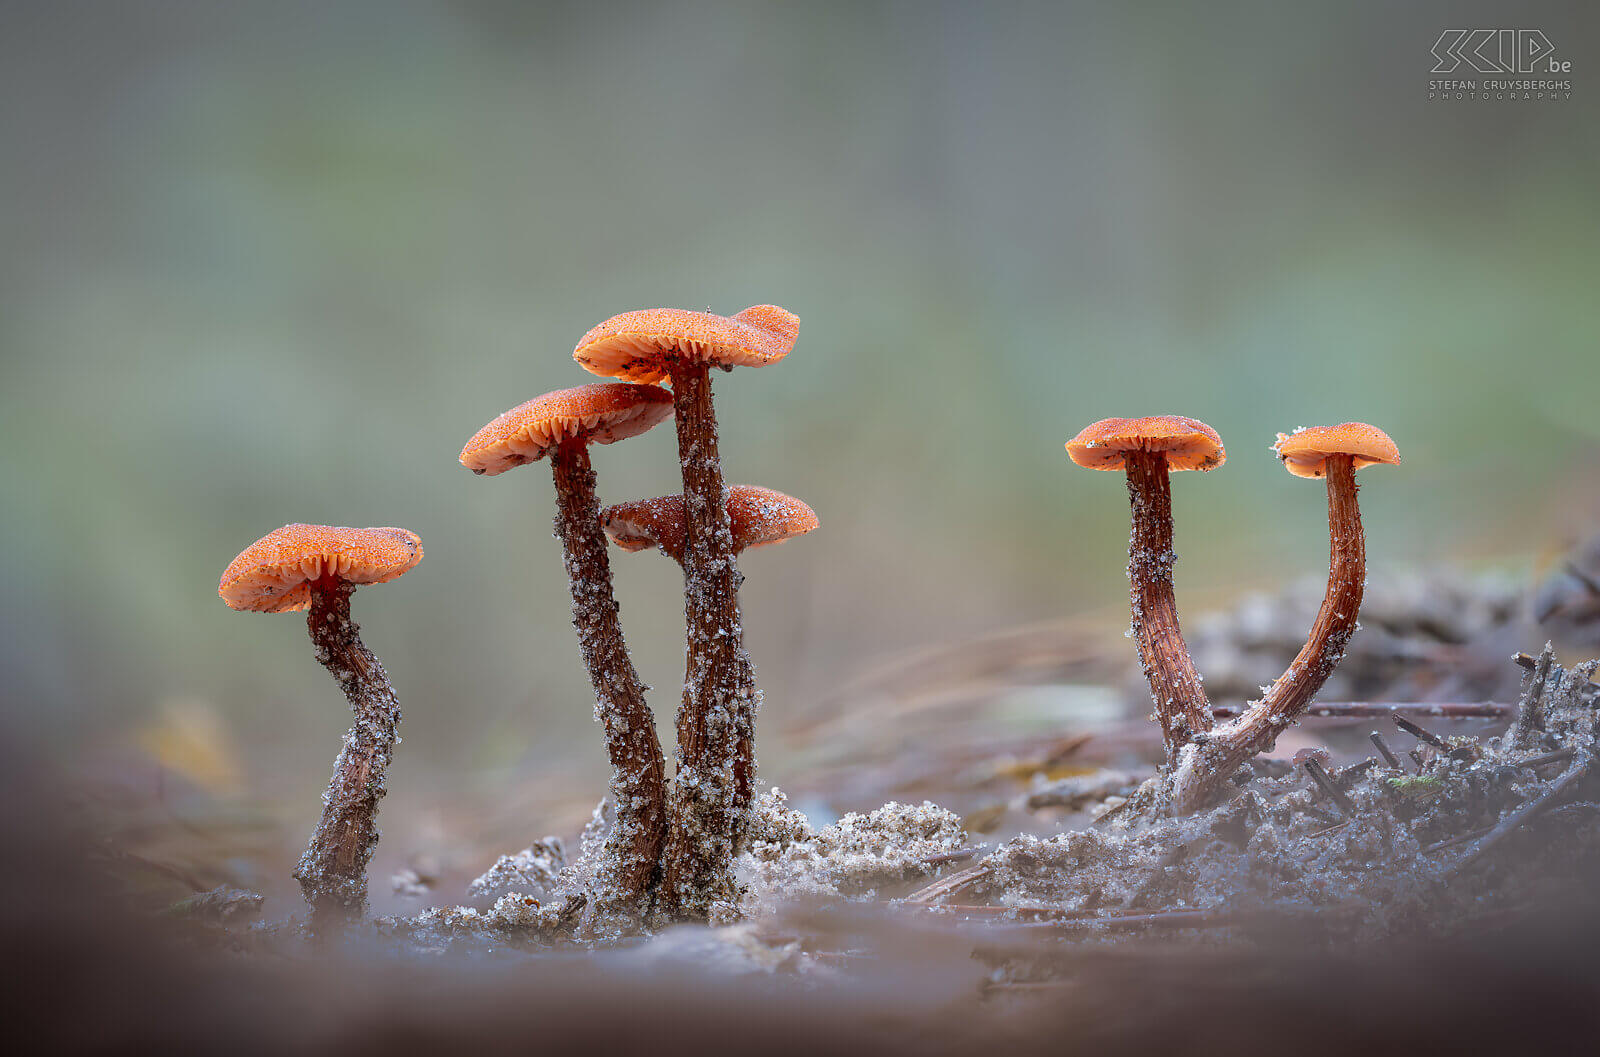 Paddenstoelen - Schubbige fopzwam De Schubbige fopzwam (Laccaria proxima), een kleine mooie oranje-bruine paddenstoel die vooral voorkomt op droge zandgronden. Deze macro foto's werden gemaakt in Averbode bos. Stefan Cruysberghs